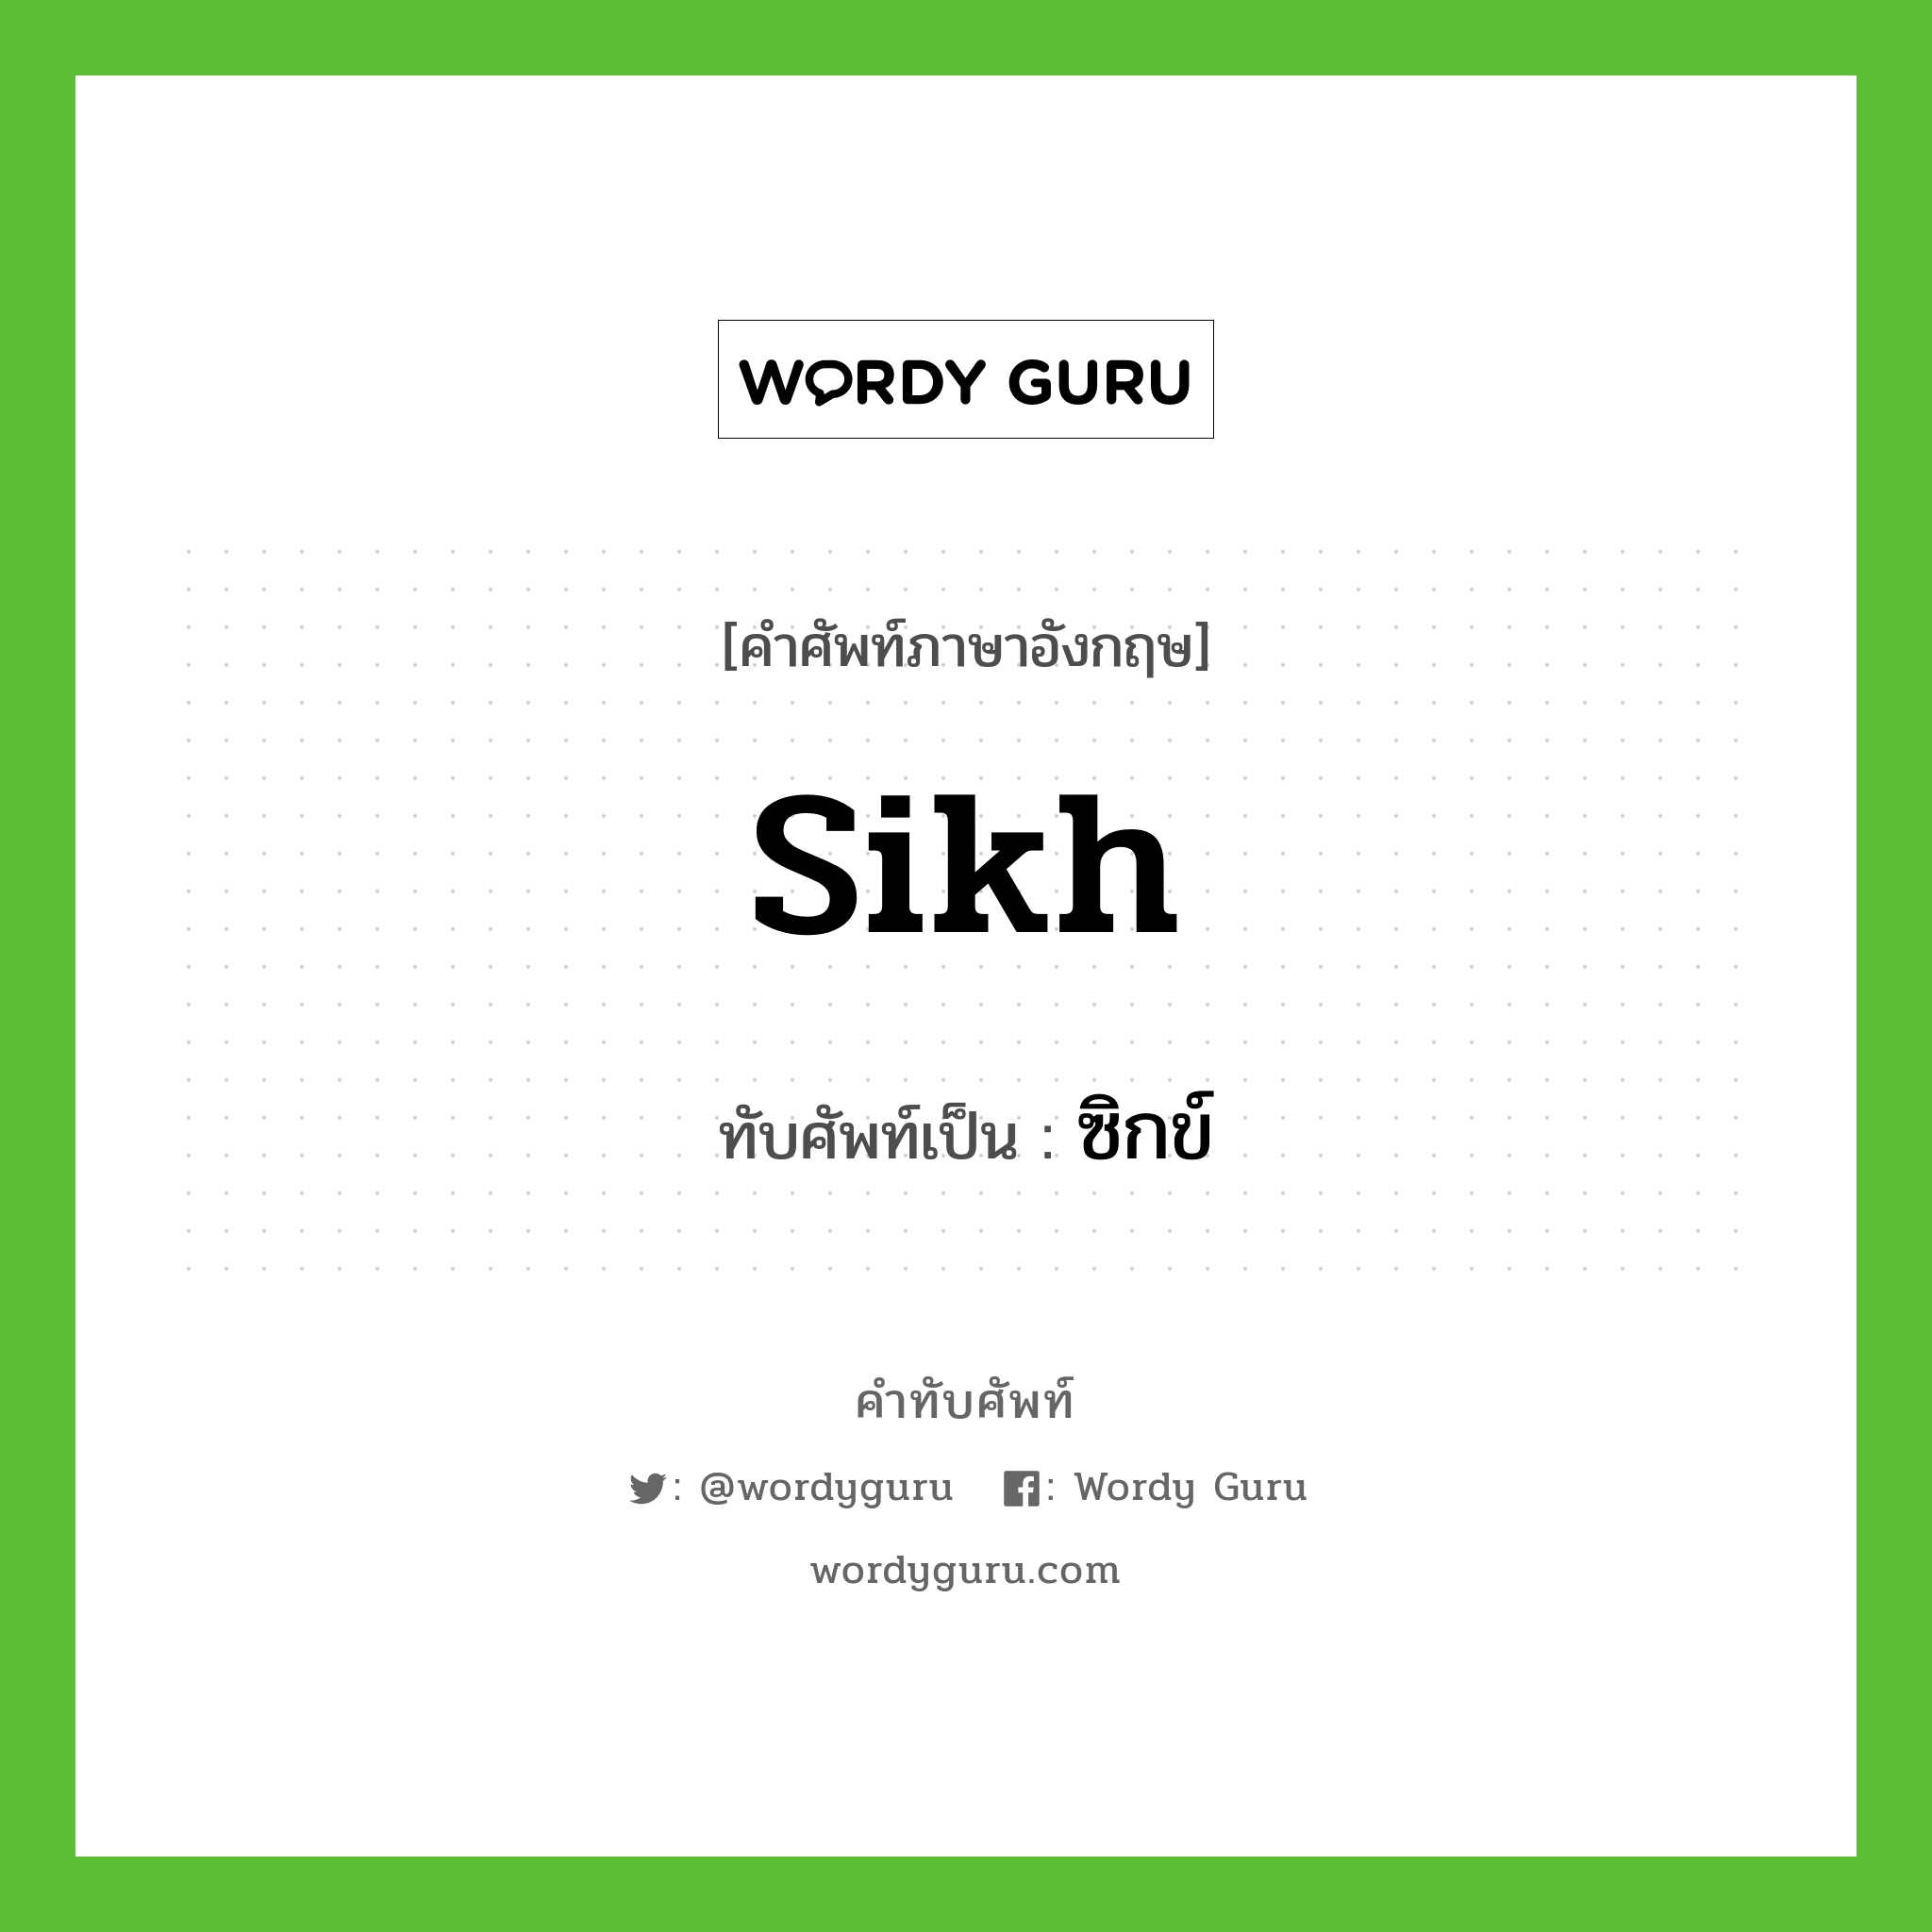 Sikh เขียนเป็นคำไทยว่าอะไร?, คำศัพท์ภาษาอังกฤษ Sikh ทับศัพท์เป็น ซิกข์